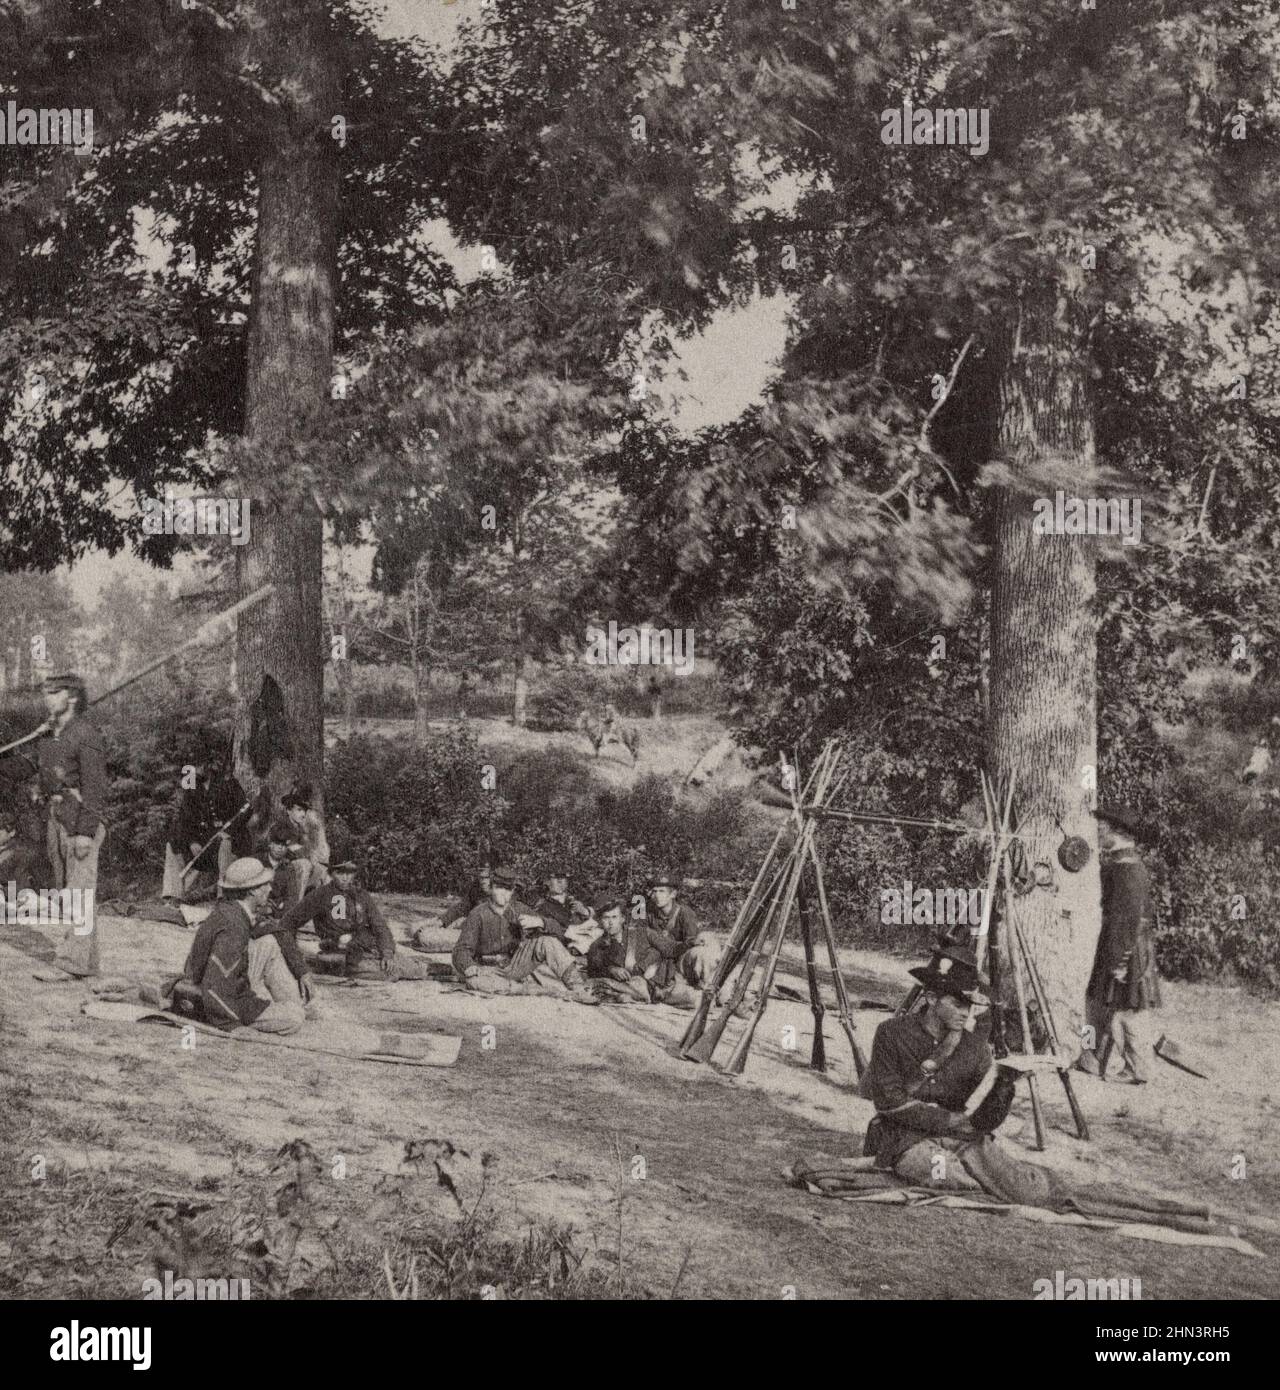 Amerikanischer Bürgerkrieg. 1861-1865. Vintage Photo Picket Reserve, 134th Illinois Volunteer Infantry in Columbus, Kentucky. Stockfoto